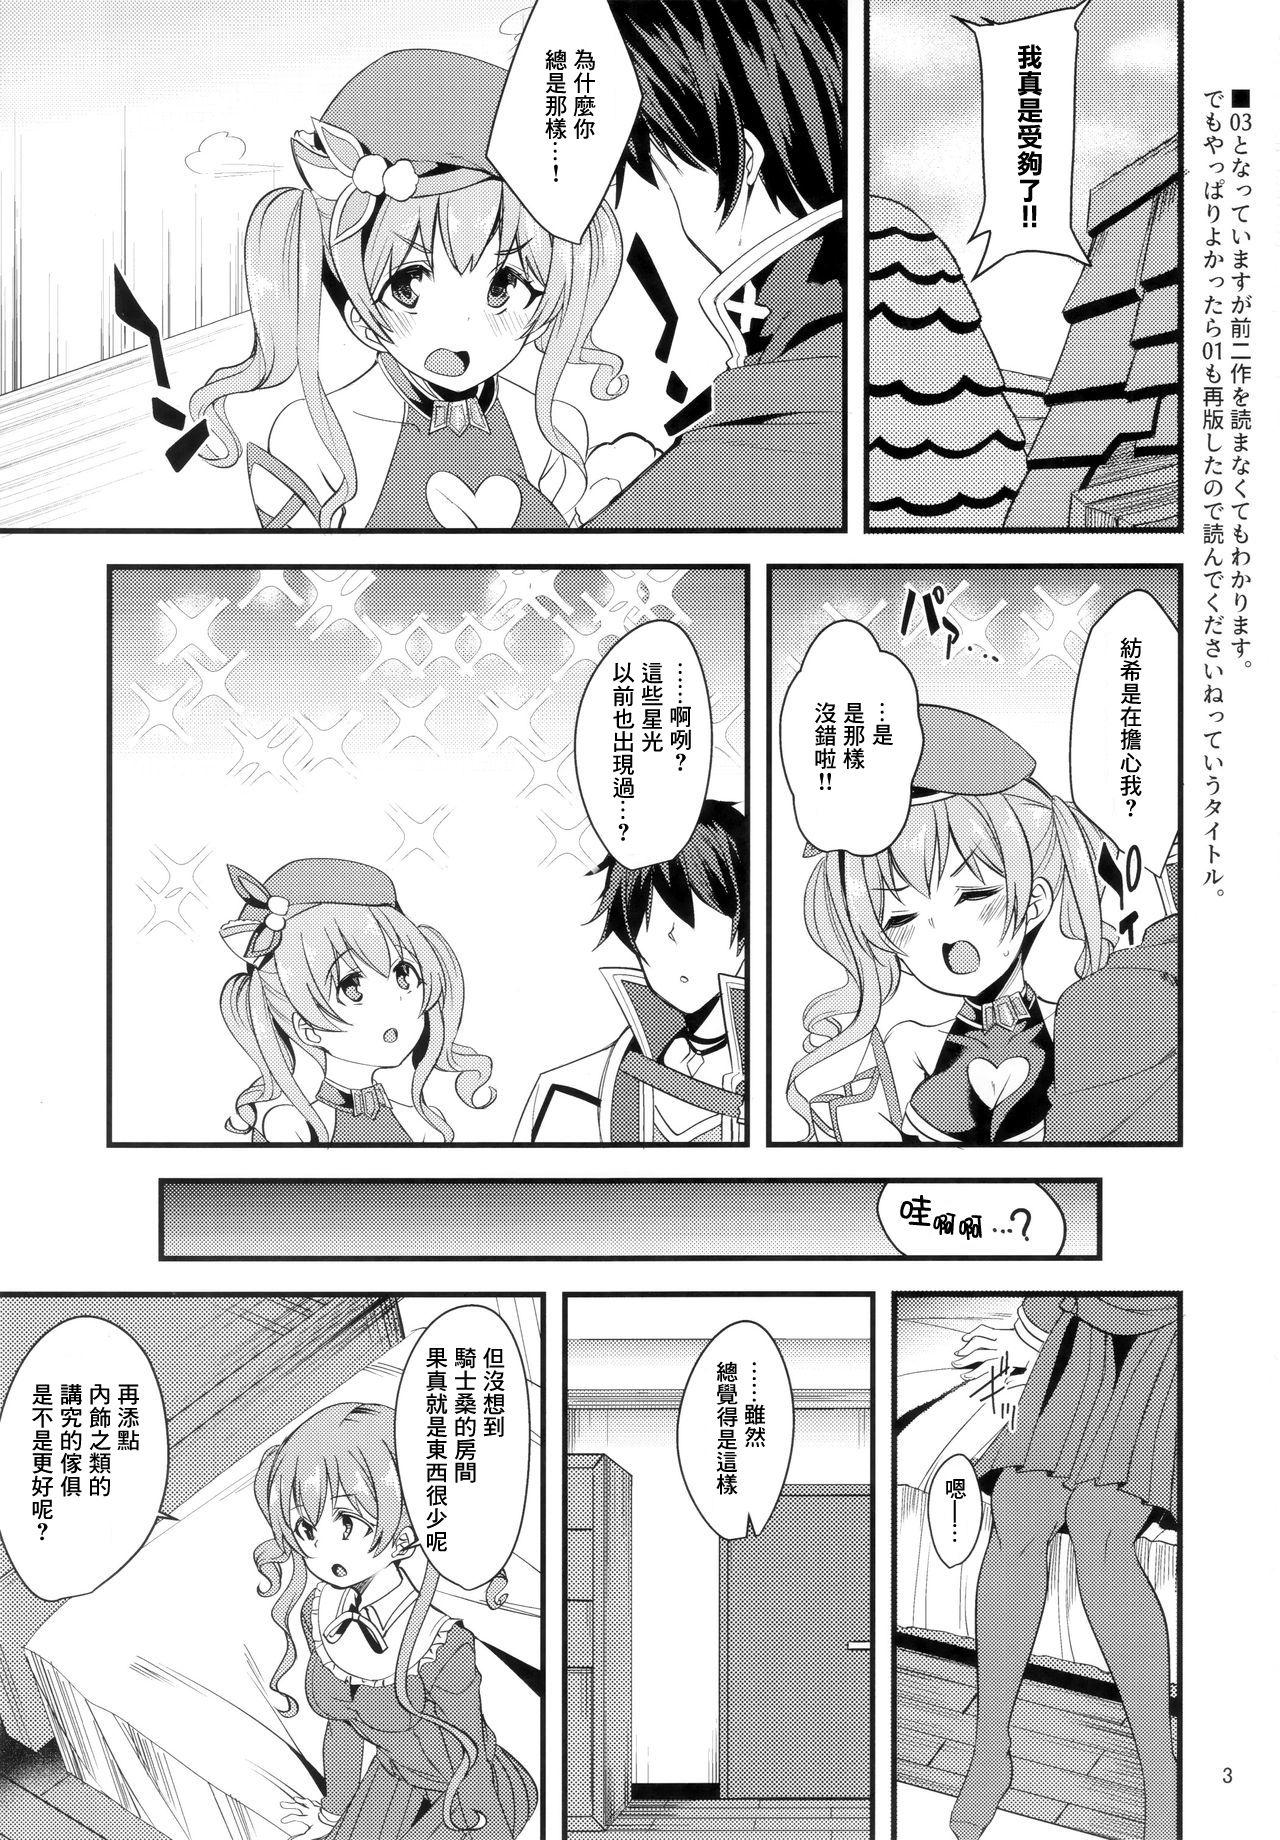 Blowjob Tsumugi Make Heroine Move!! 03 - Princess connect Sex Party - Page 3